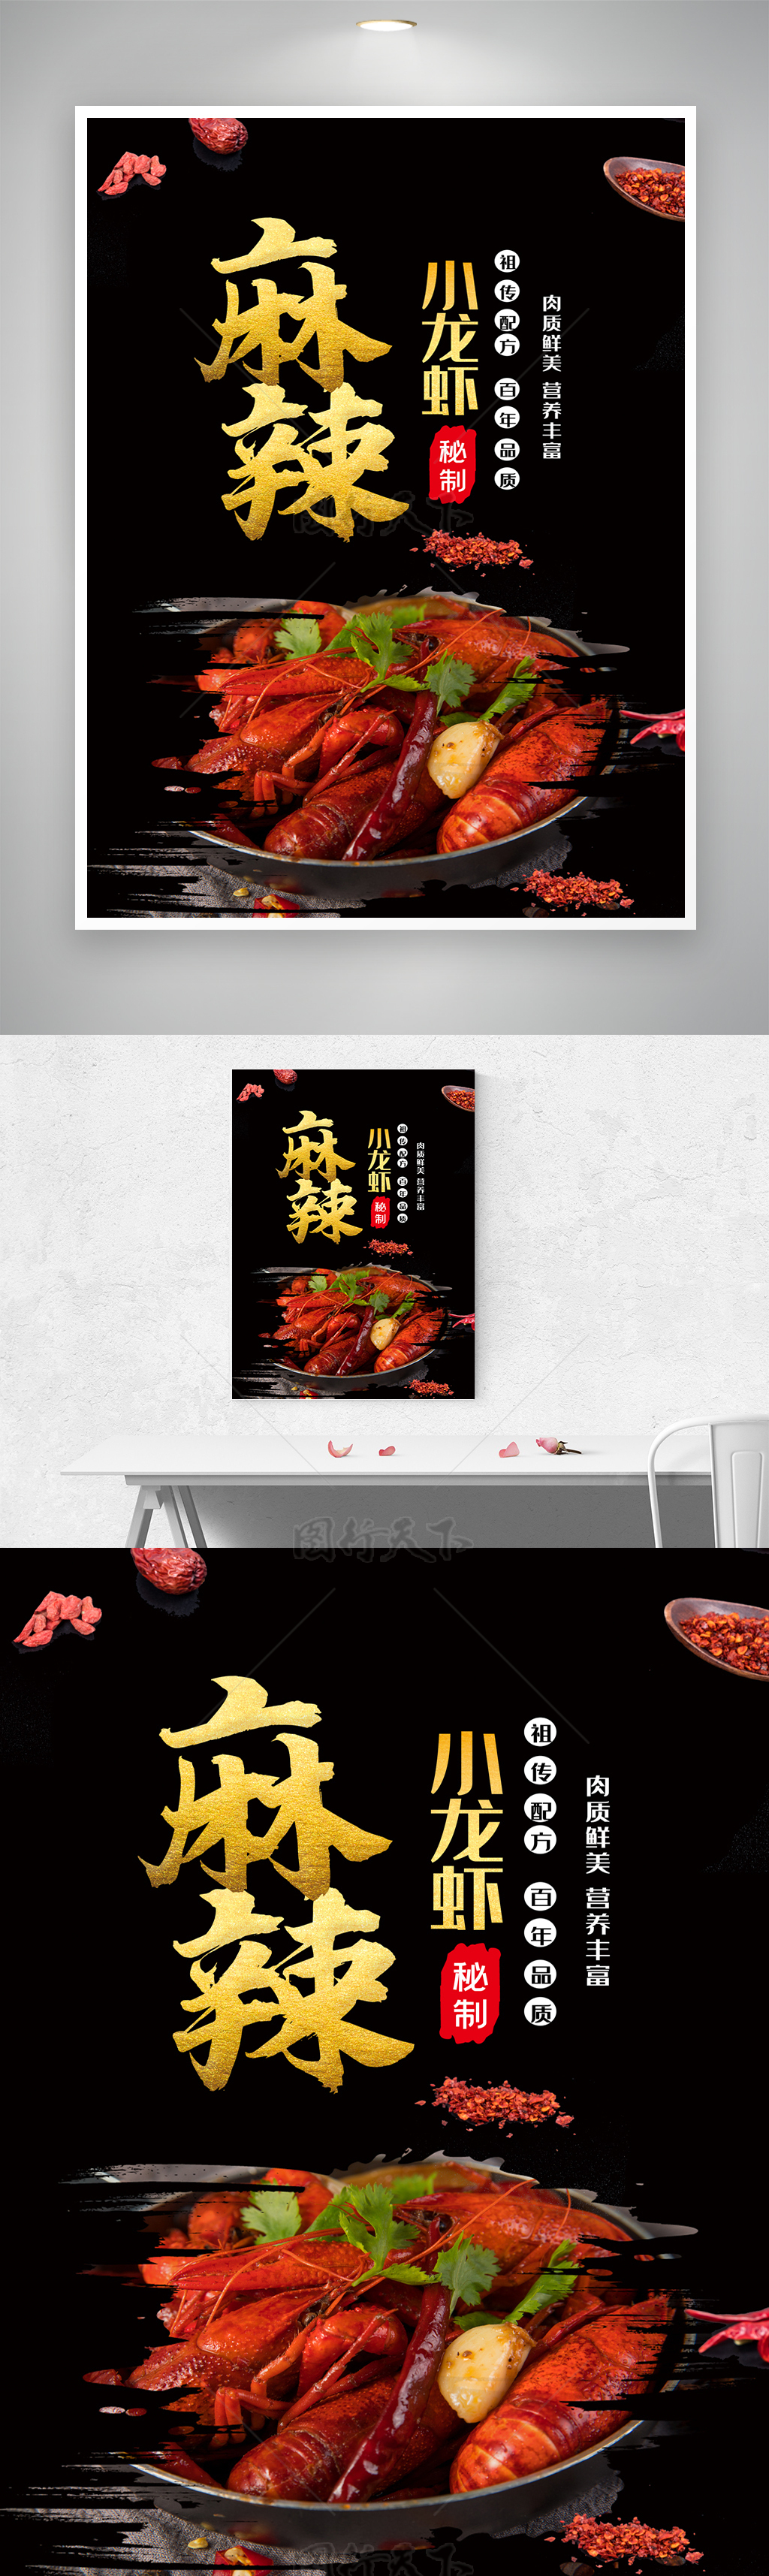 秘制麻辣小龙虾美食活动海报